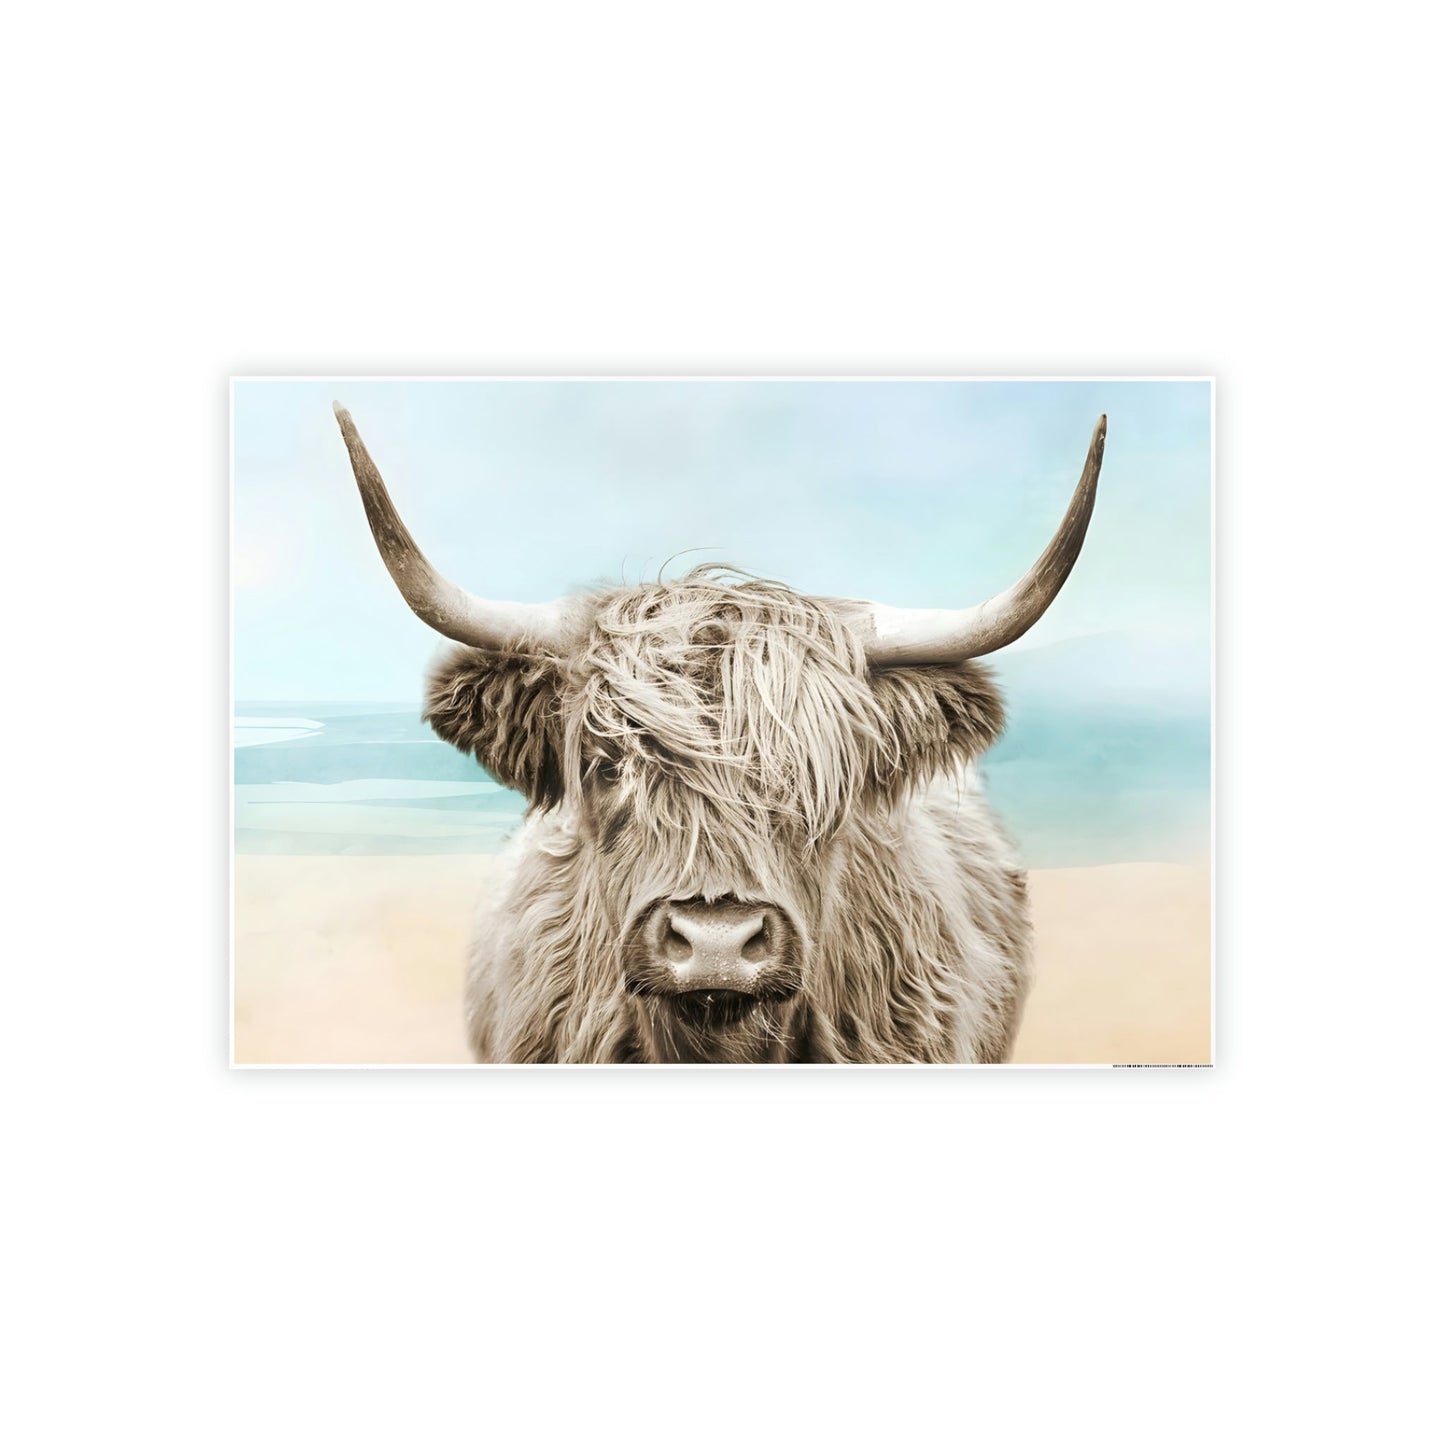 Framed in Wonder: Framed Poster of a Stunning Highland Cow Portrait